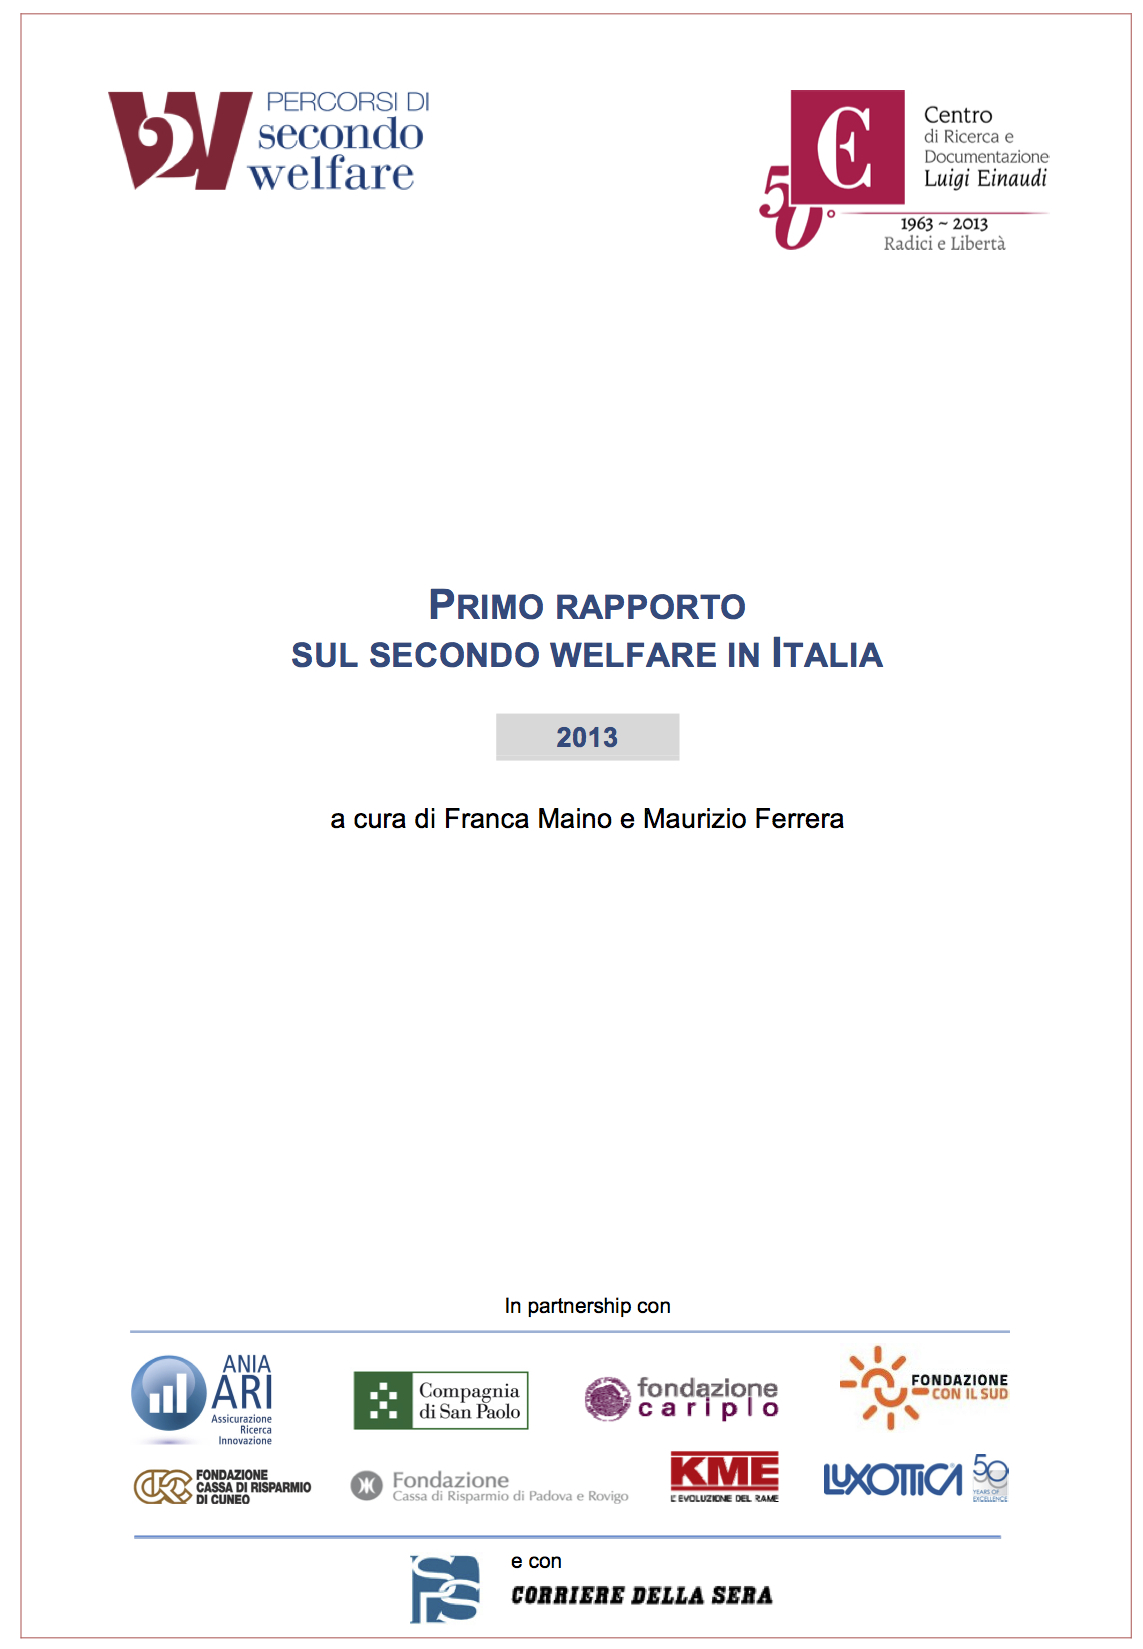 Primo Rapporto sul secondo welfare in Italia 2013